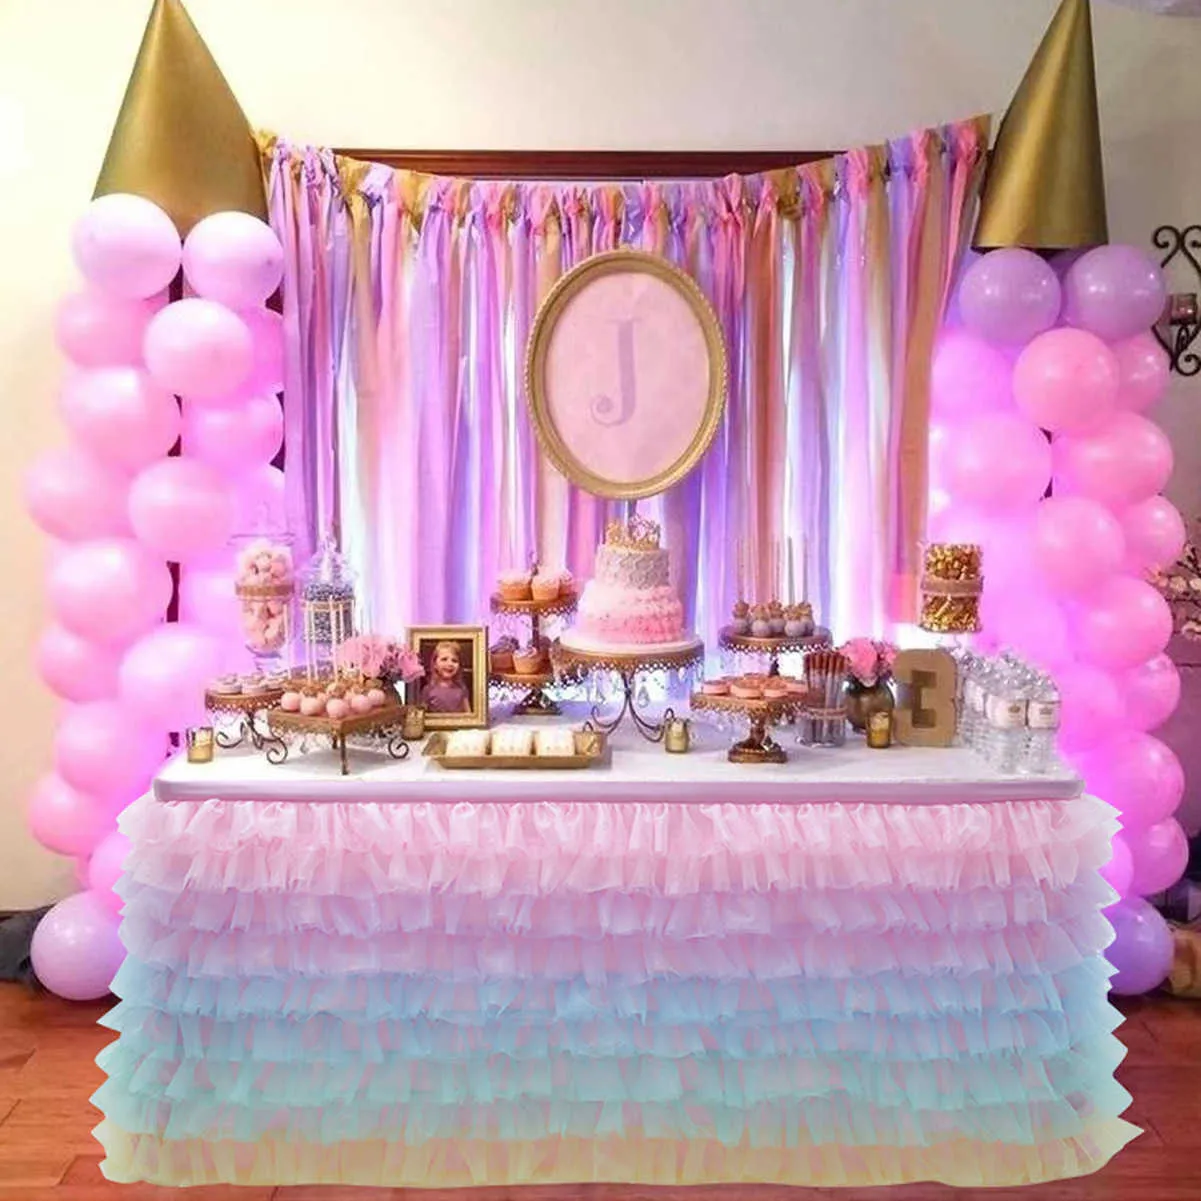 Jupe de Table Tutu en Tulle, nappe à 5 niveaux, tissu Organza Patchwork fait à la main, décoration de mariage, anniversaire, réception-cadeau pour bébé